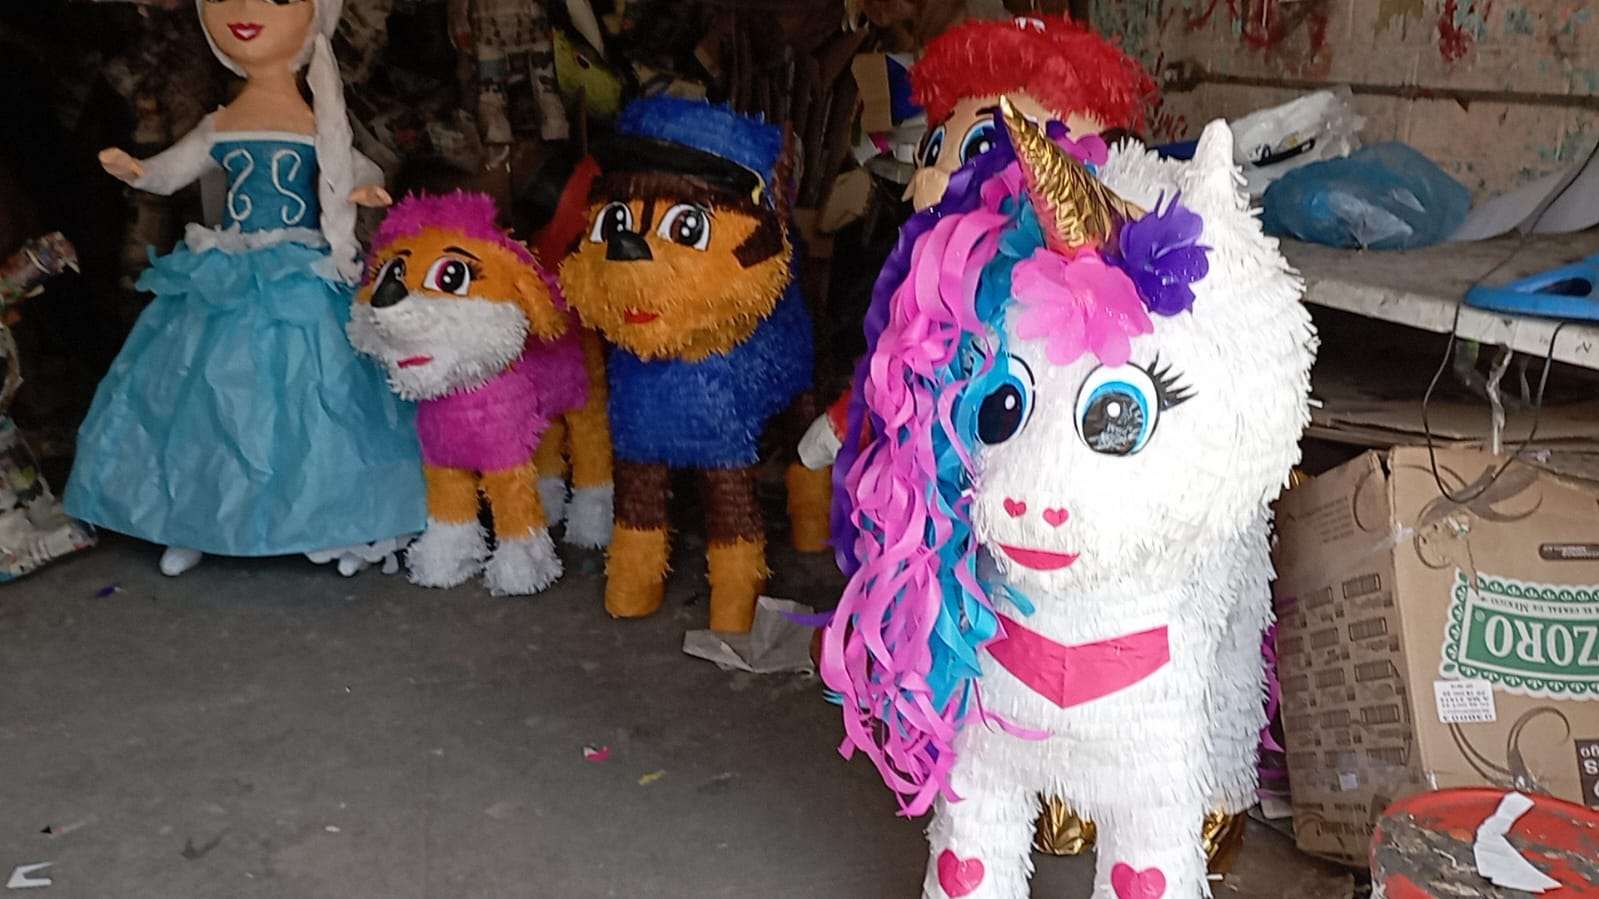 Continúa el furor por Barbie en Chihuahua, ¡ahora hacen hasta piñatas! - El  Heraldo de Chihuahua